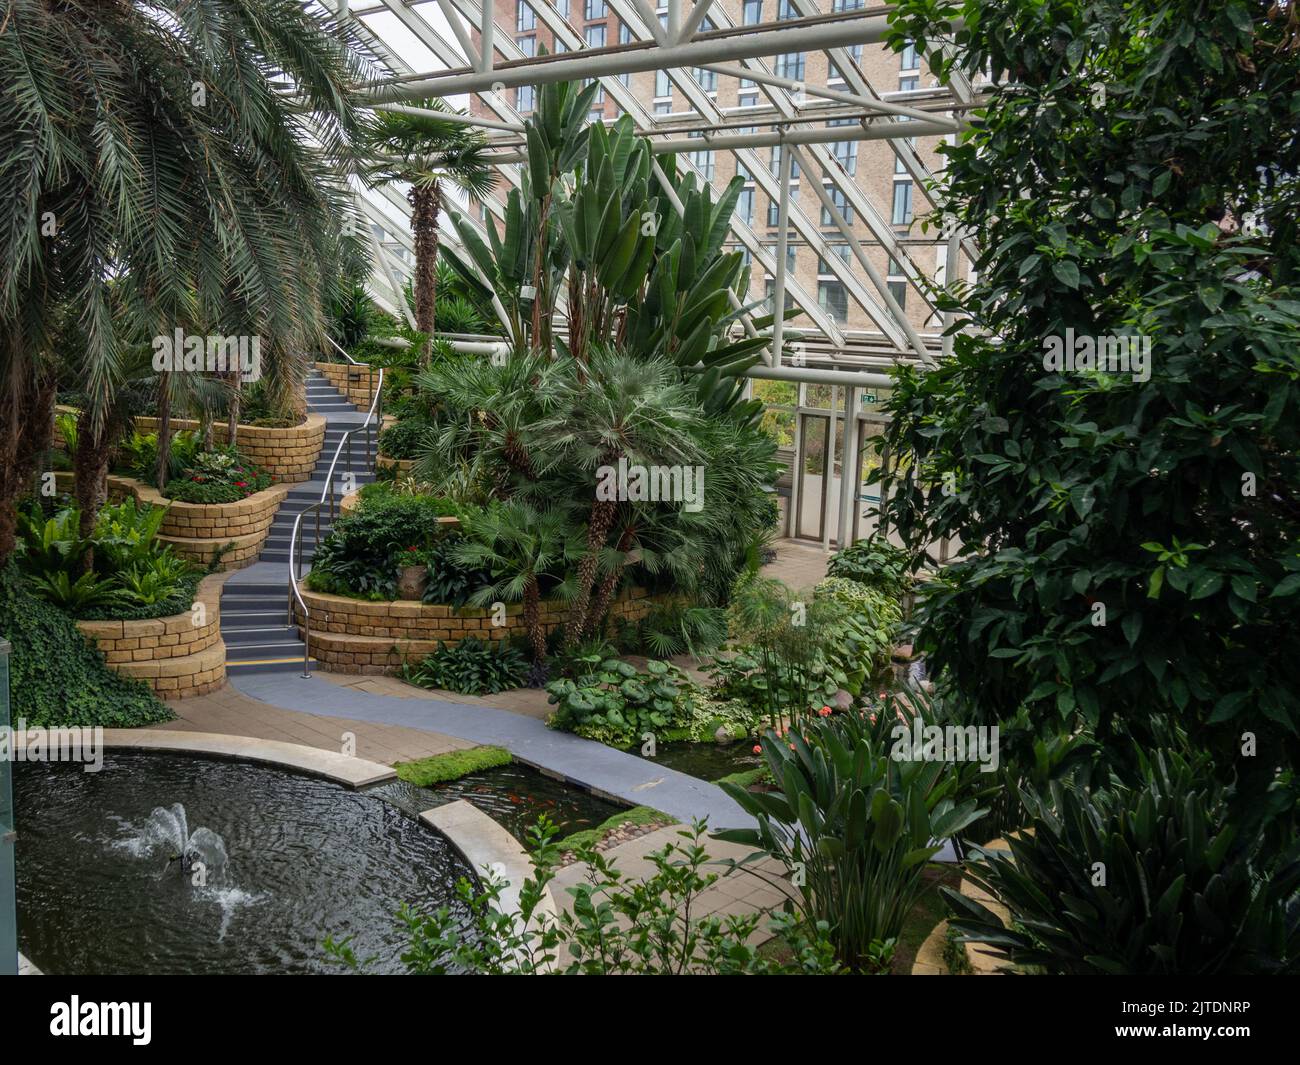 Jardins tropicaux sous verre, une partie de le Bannatyne Health Club and Spa, Milton Keynes, UK Banque D'Images